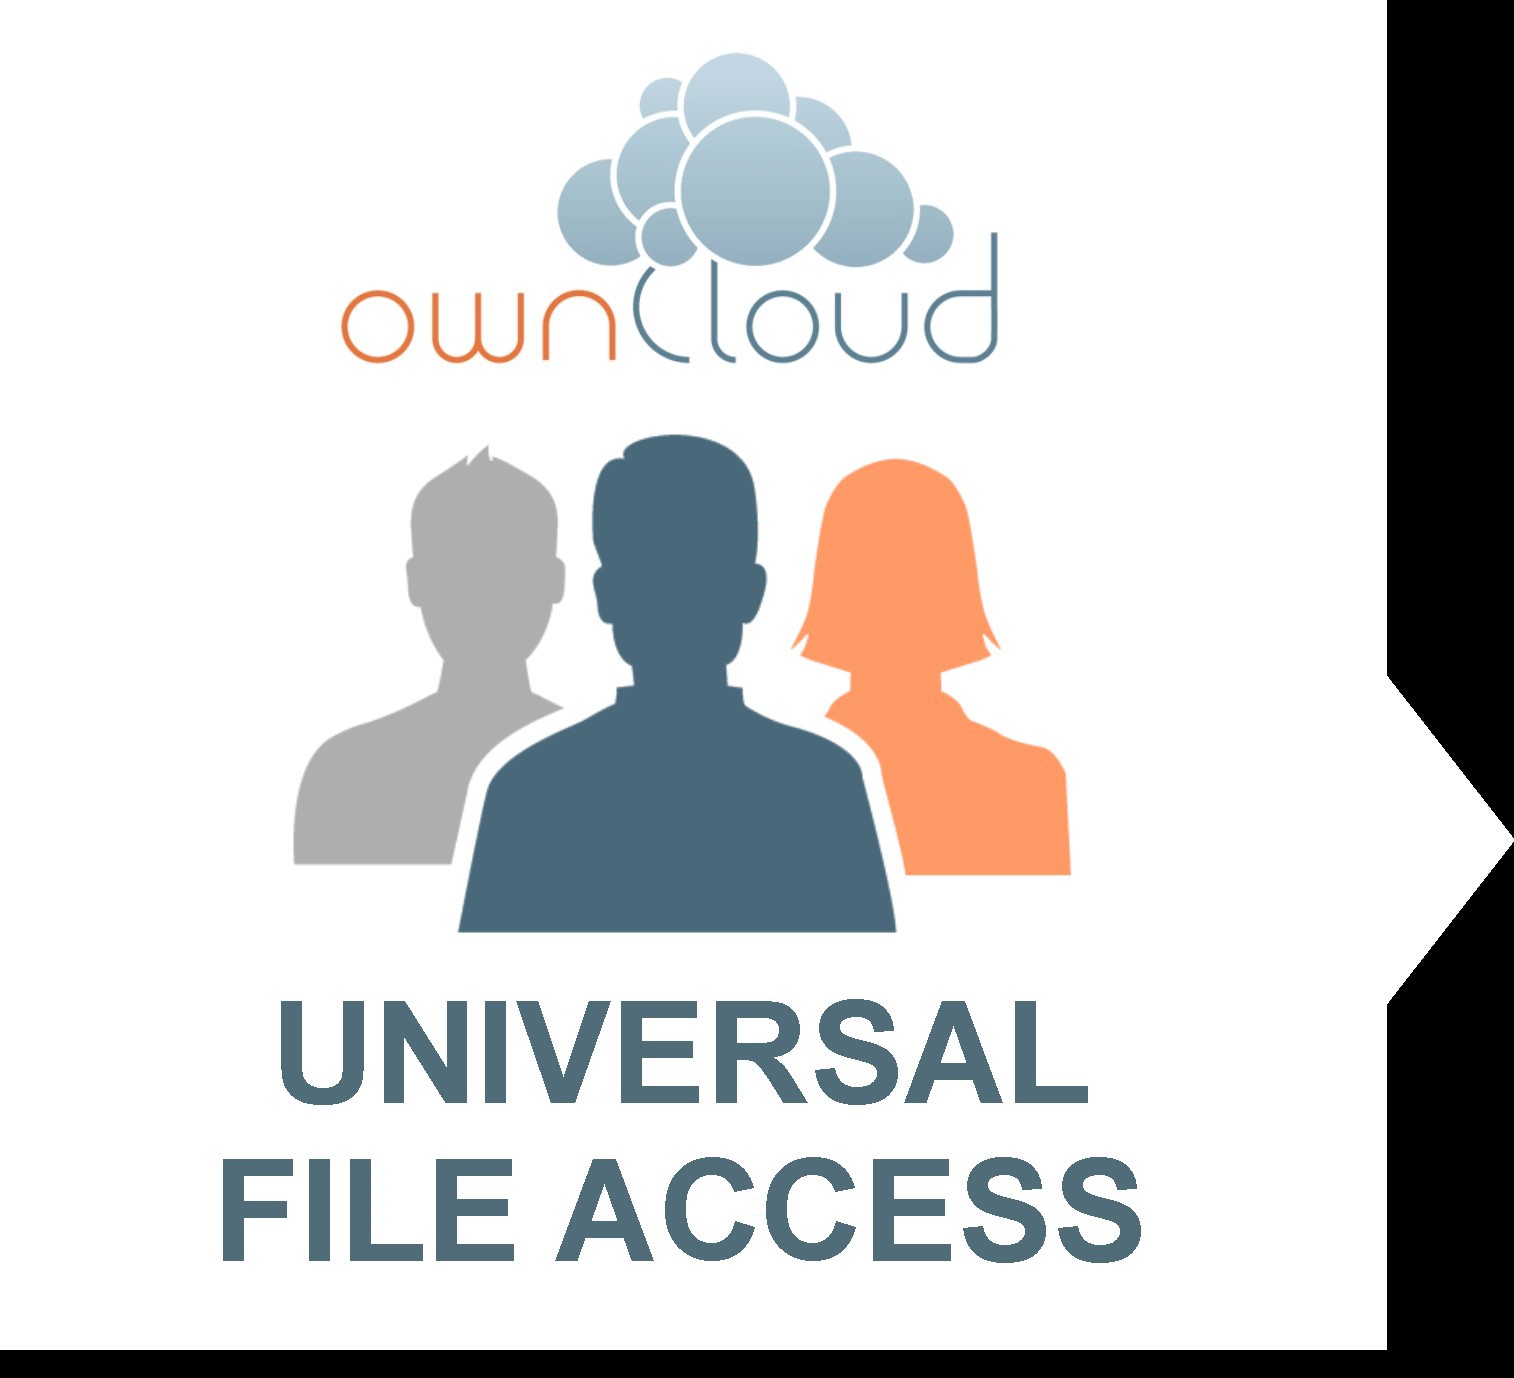 owncloud ist mehr, als reines File Sync and Share owncloud bietet darüber hinaus einen Zugriff auf alle Files im Unternehmen, egal, wo diese liegen, also einen Universal File Access : ACCESS